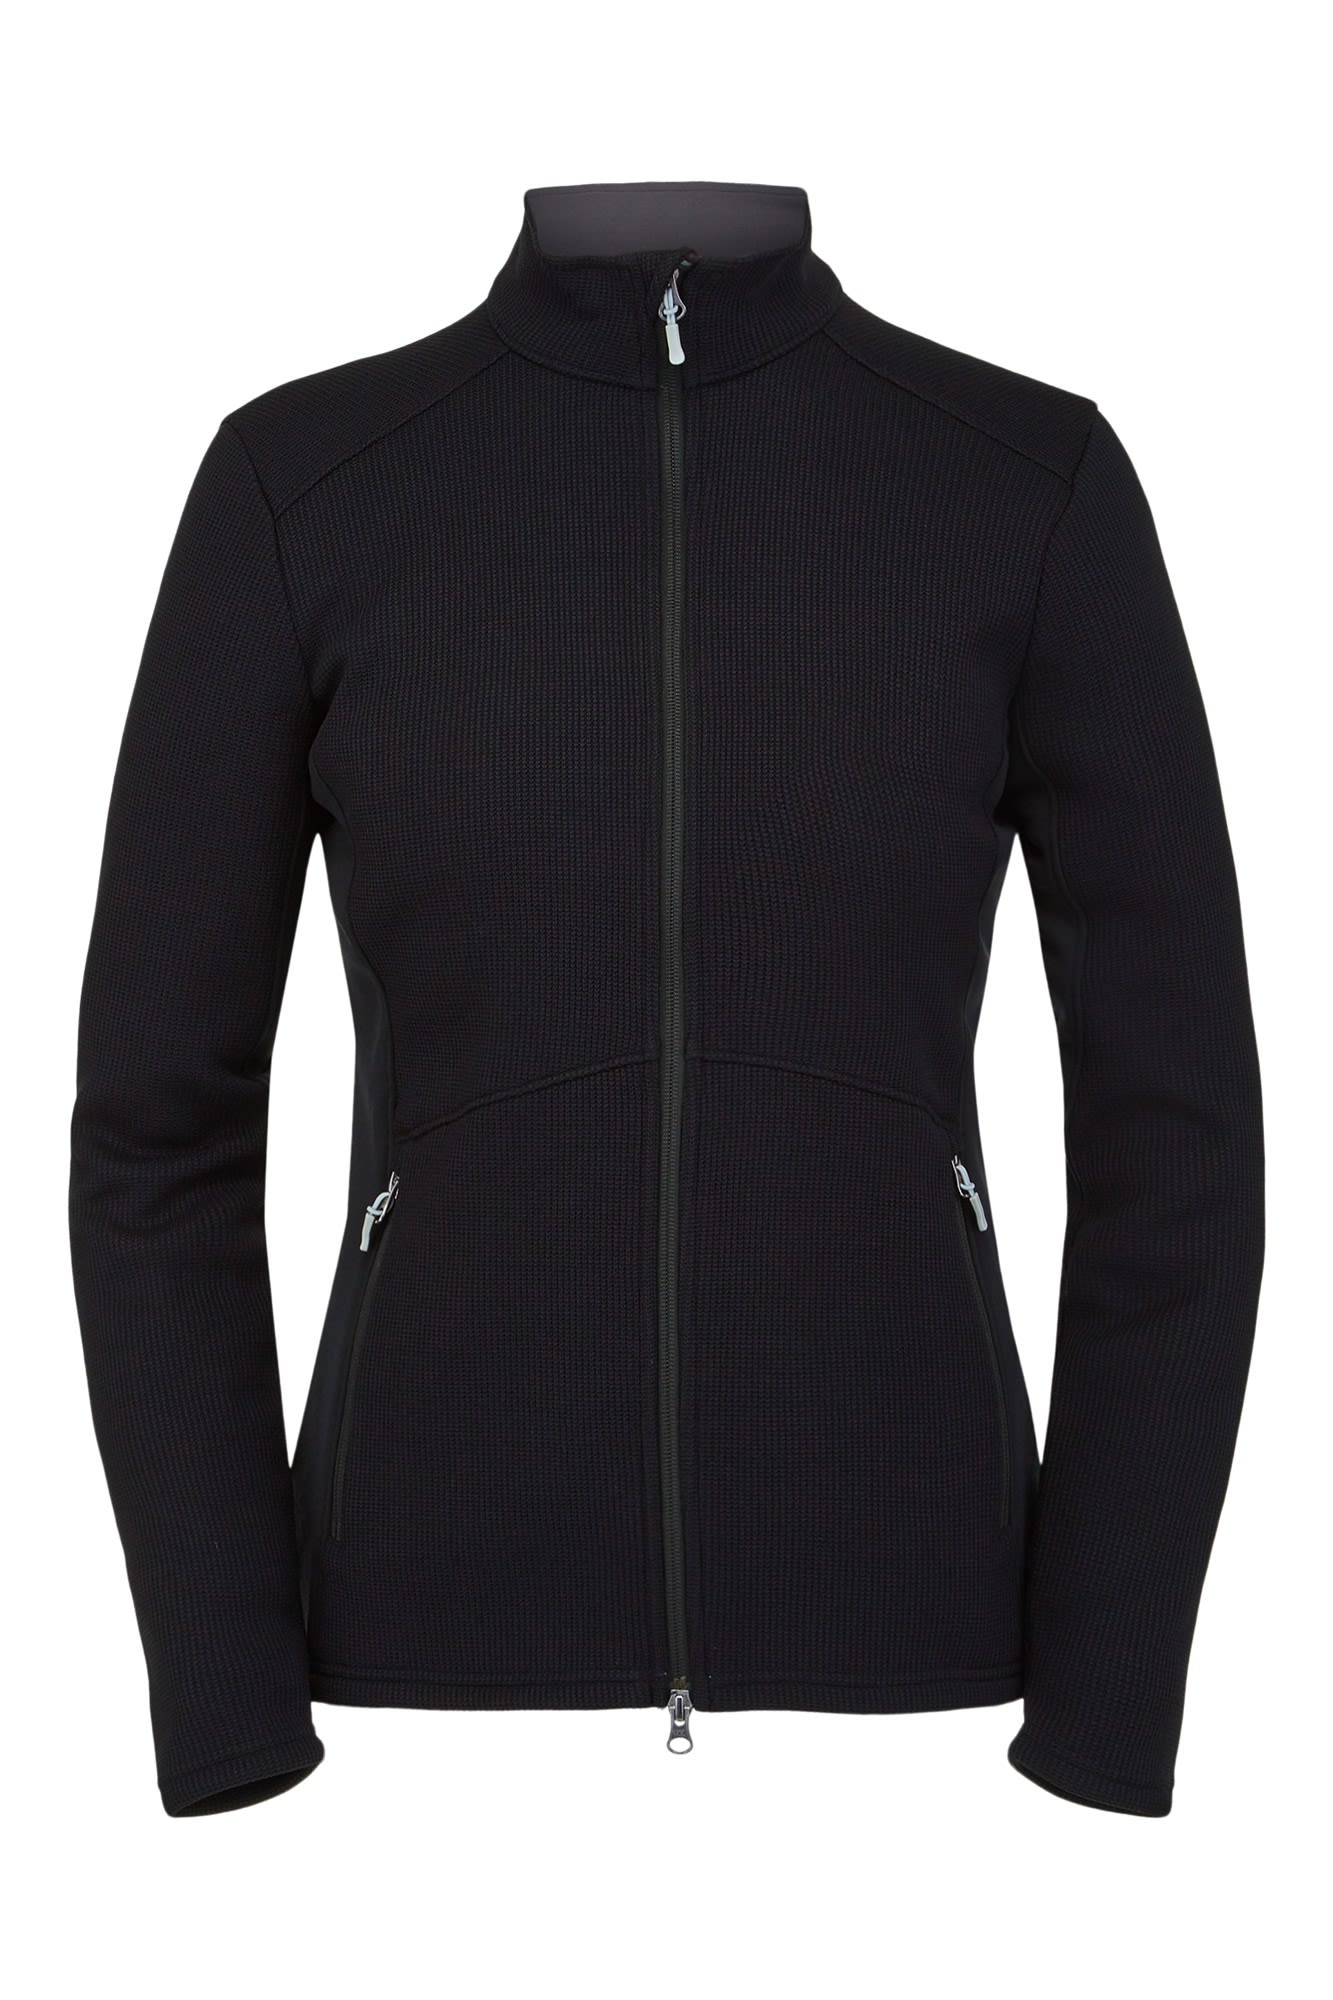 Spyder Bandita Full Zip Schwarz- Female Fleece- und Powerstretch-Pullover- Grsse L - Farbe Black unter Spyder